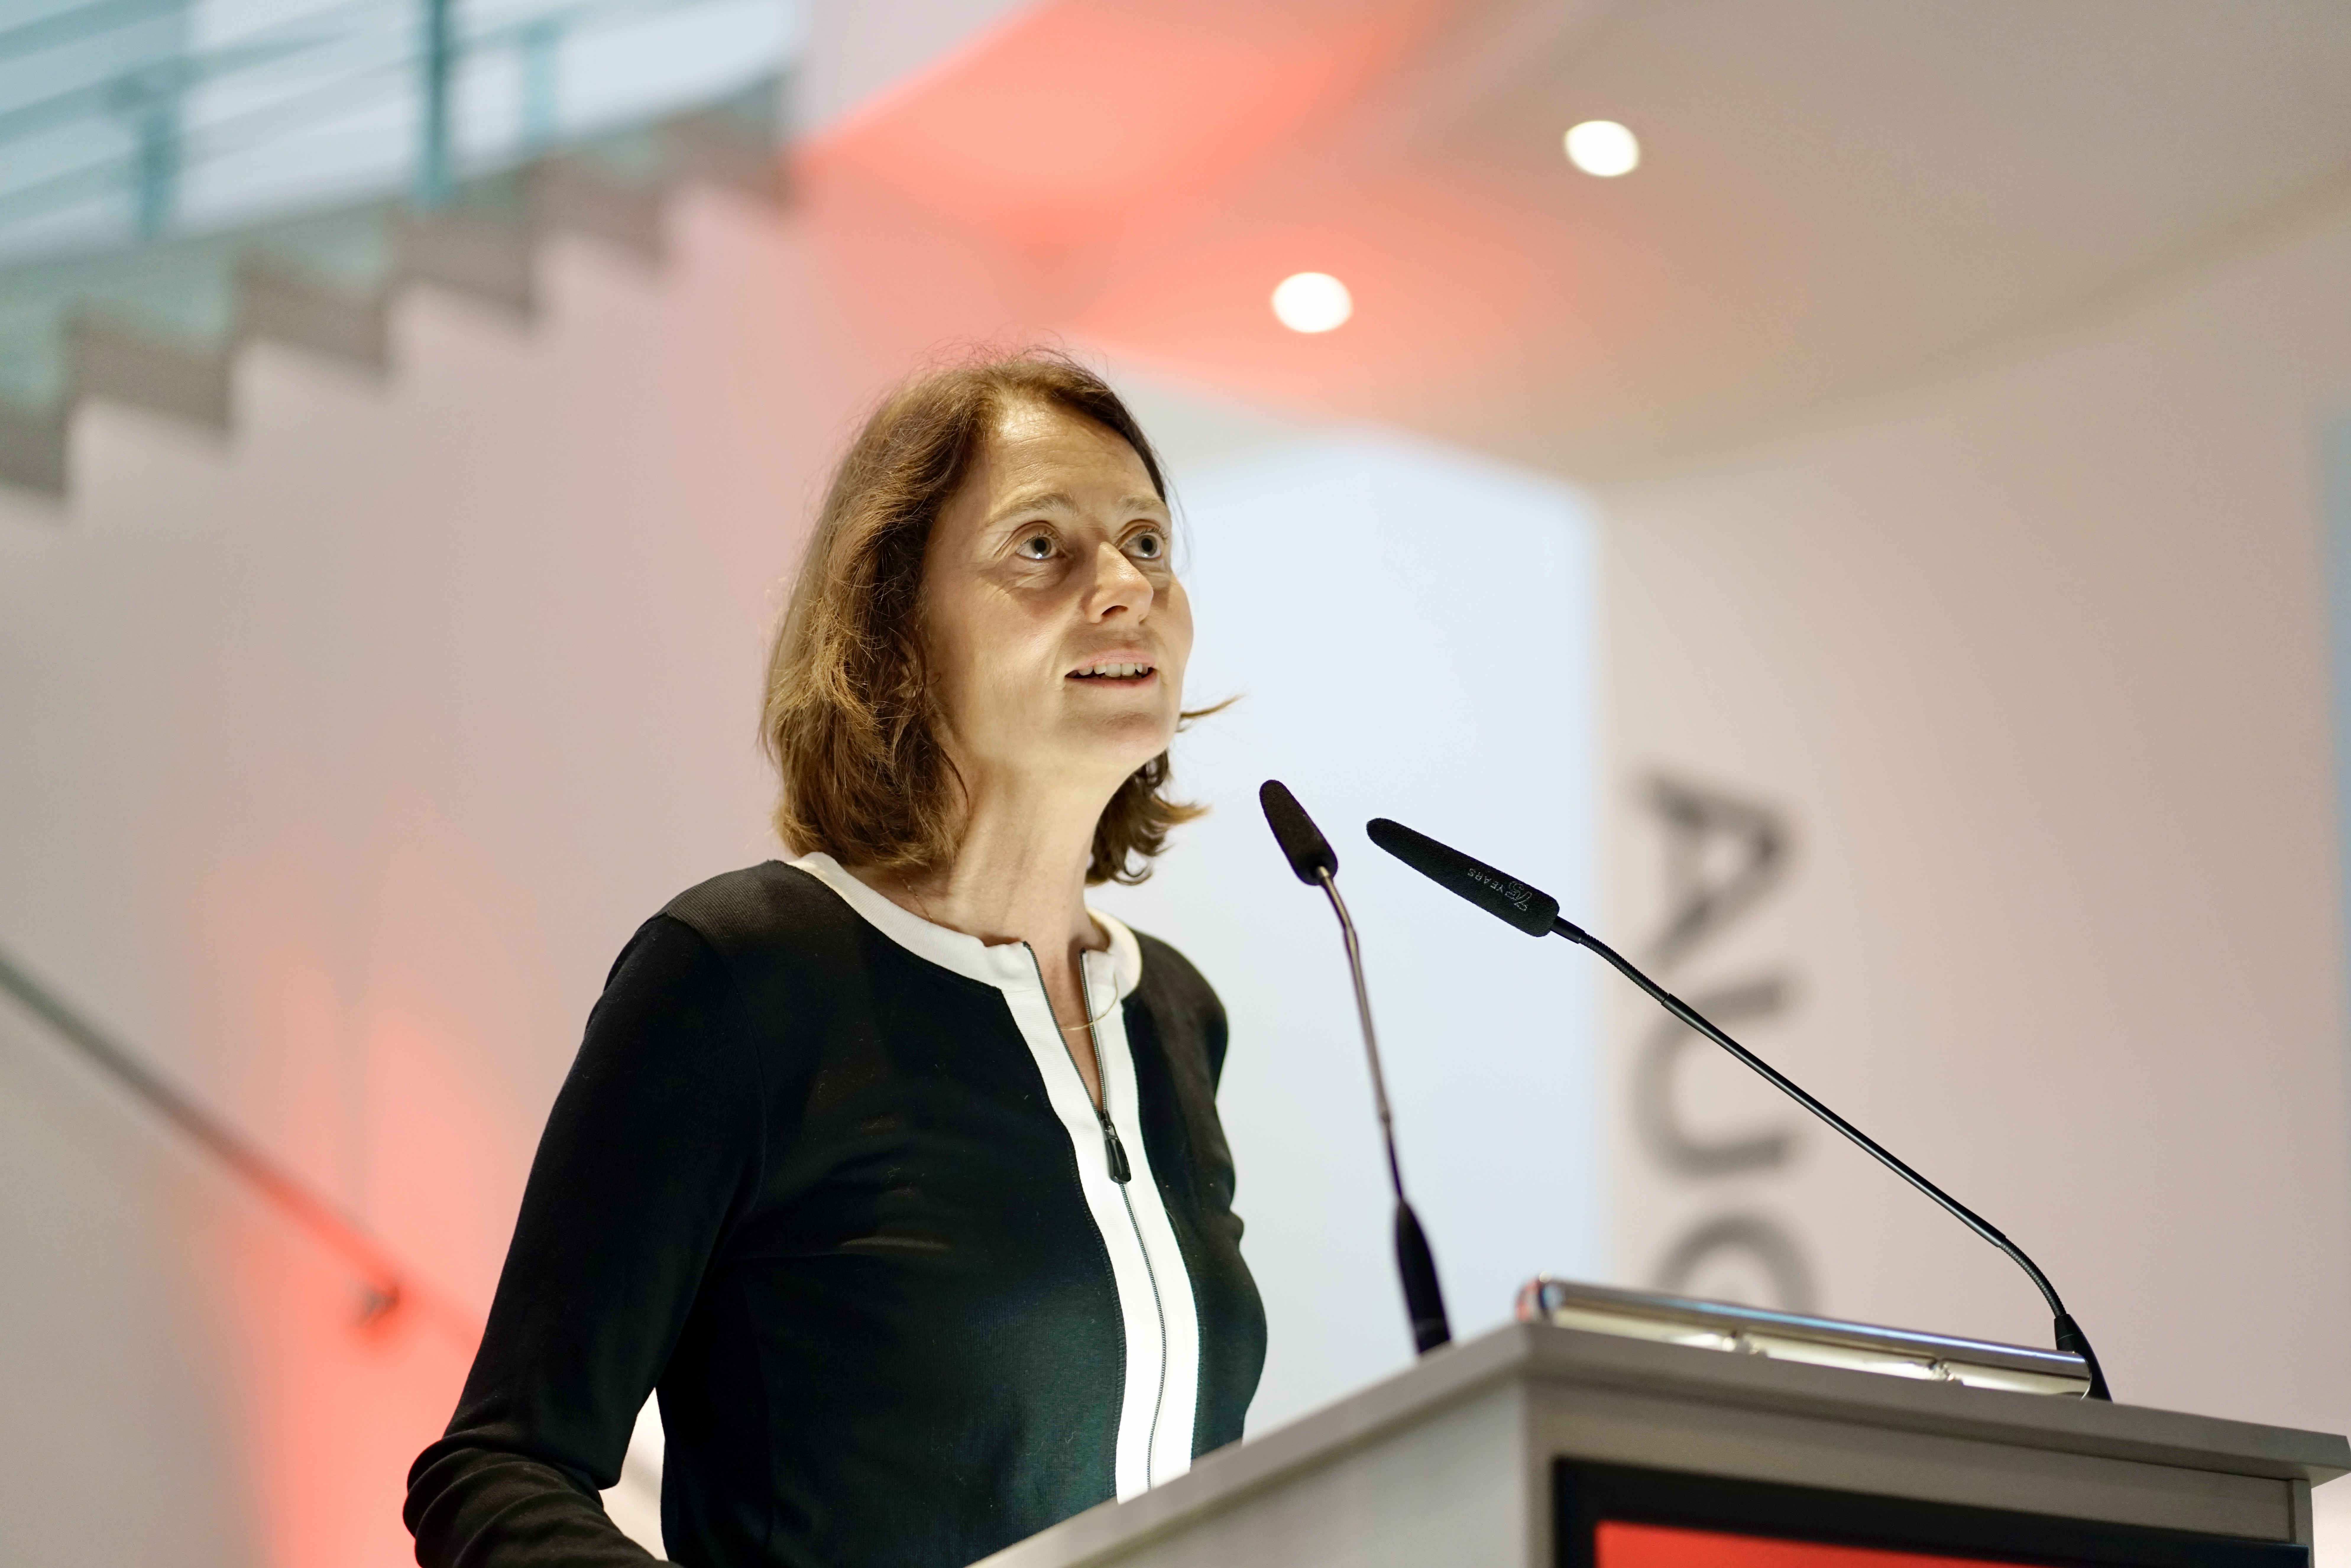 Die Spitzenkandidatin zur Europawahl zu Gast in der Bundesstadt: Katarina Barley spricht beim Europa-Empfang der Bonner SPD.